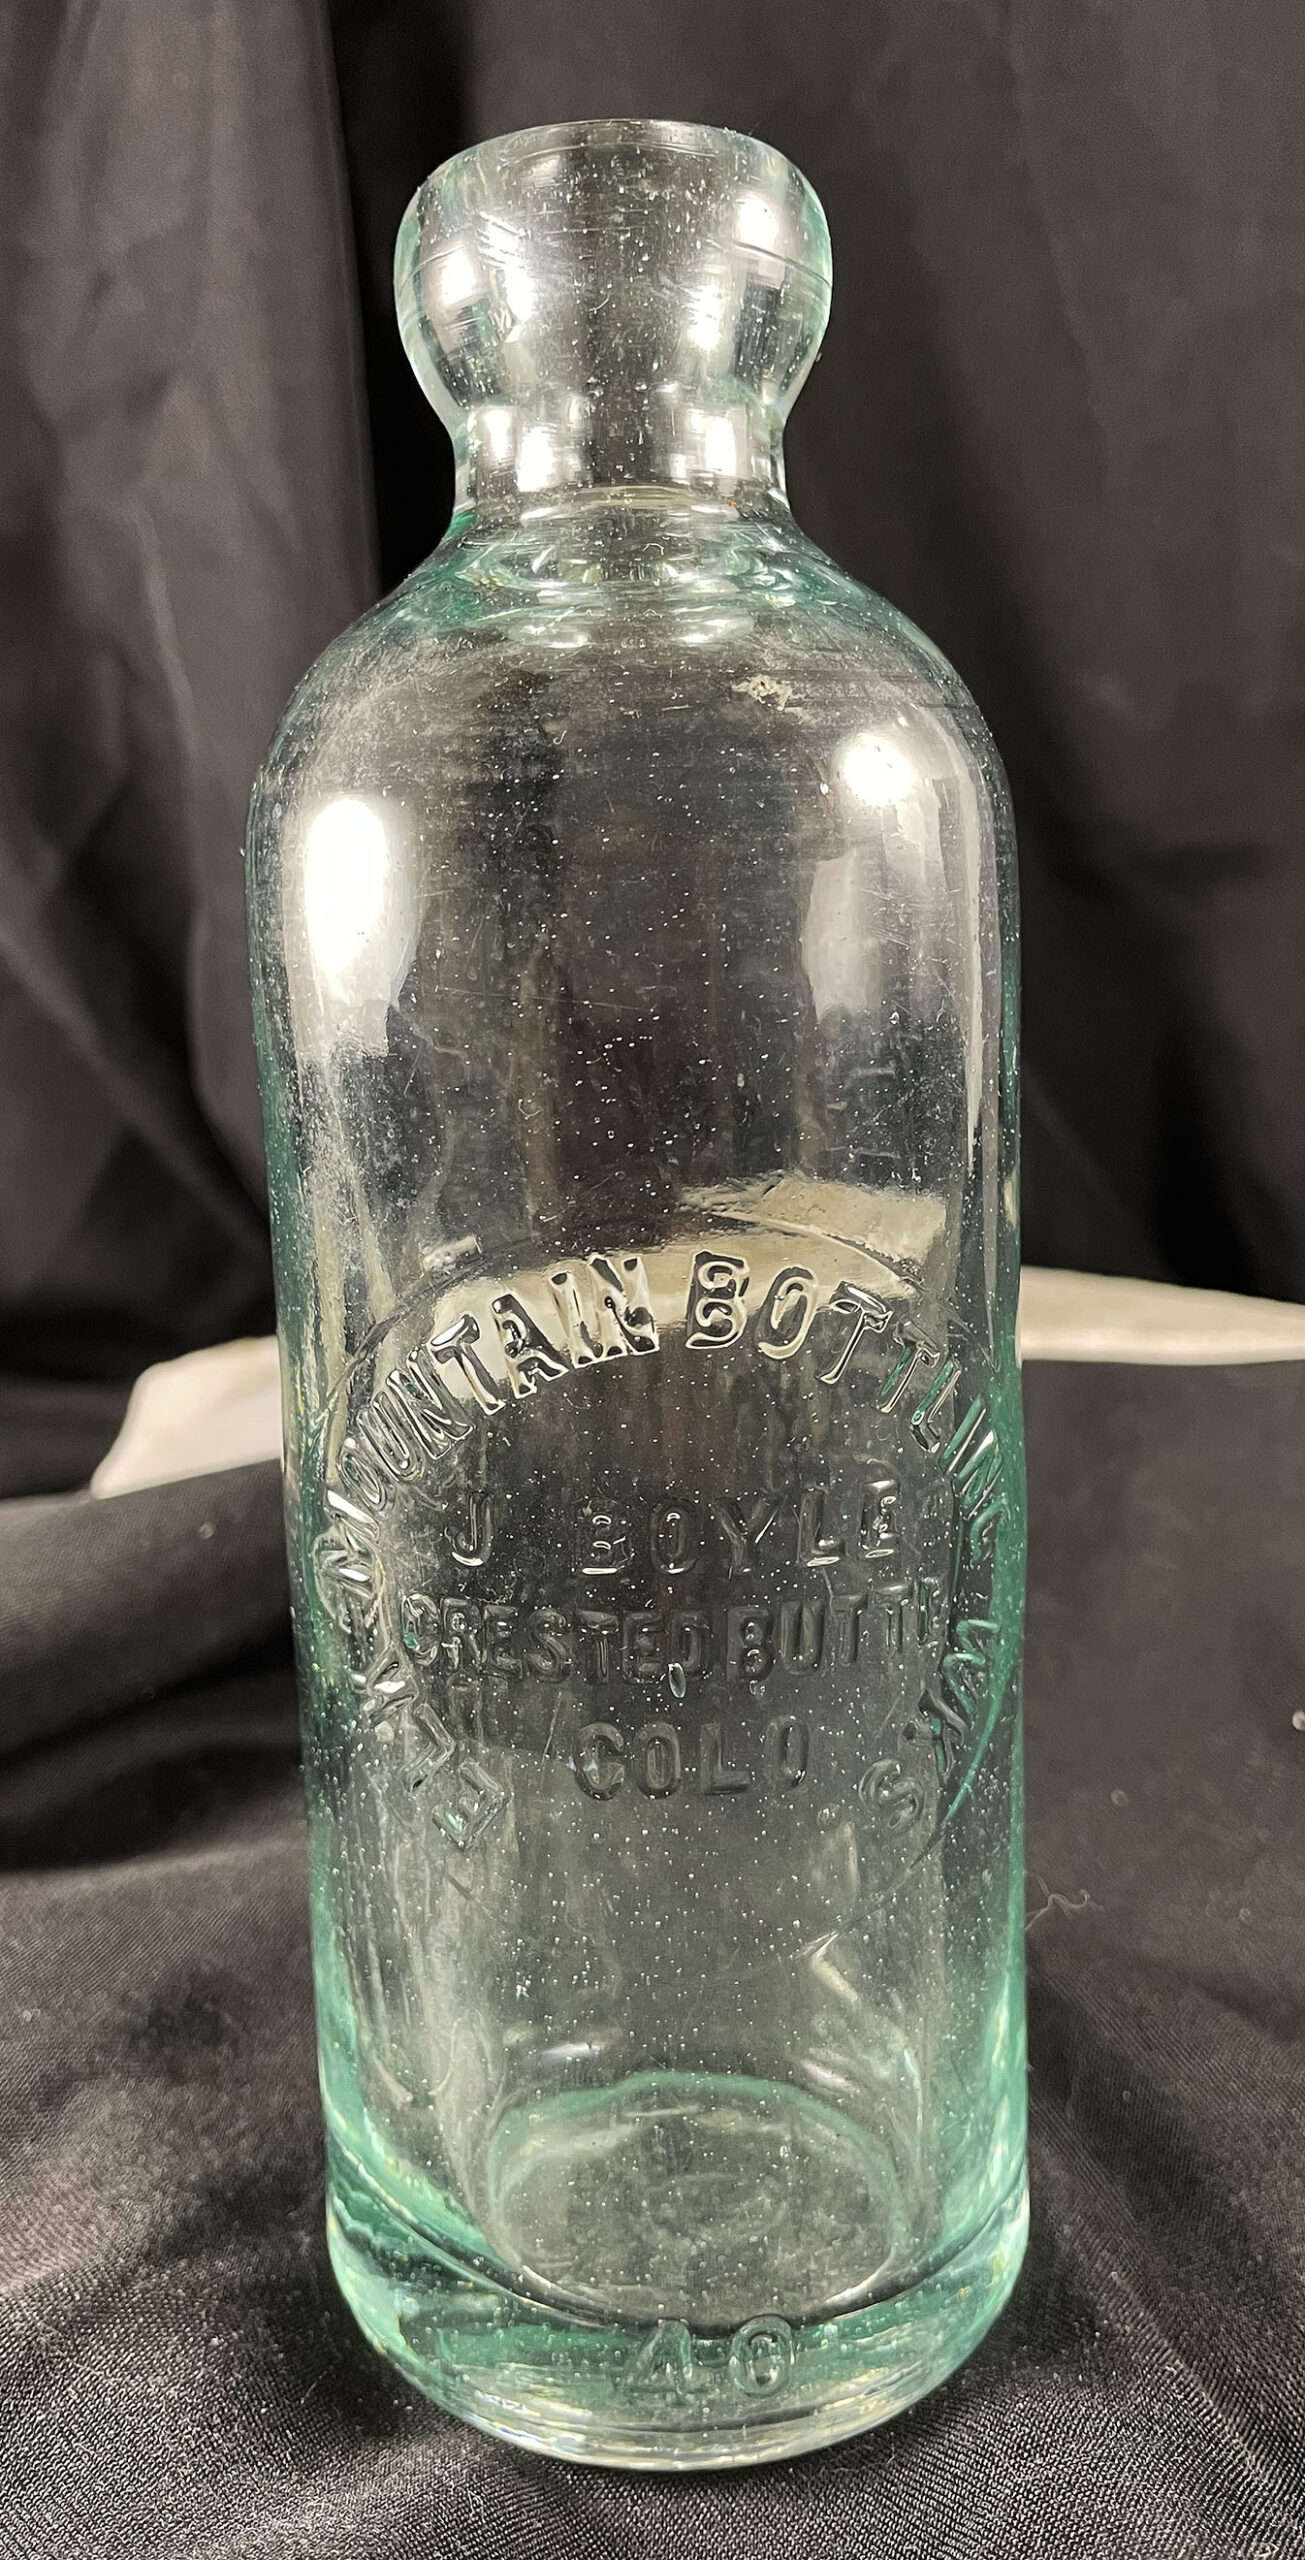 ELK MOUNTAIN BOTTLING WORKS CRESTED BUTTE COLORADO antique Hutchinson soda bottle 1900